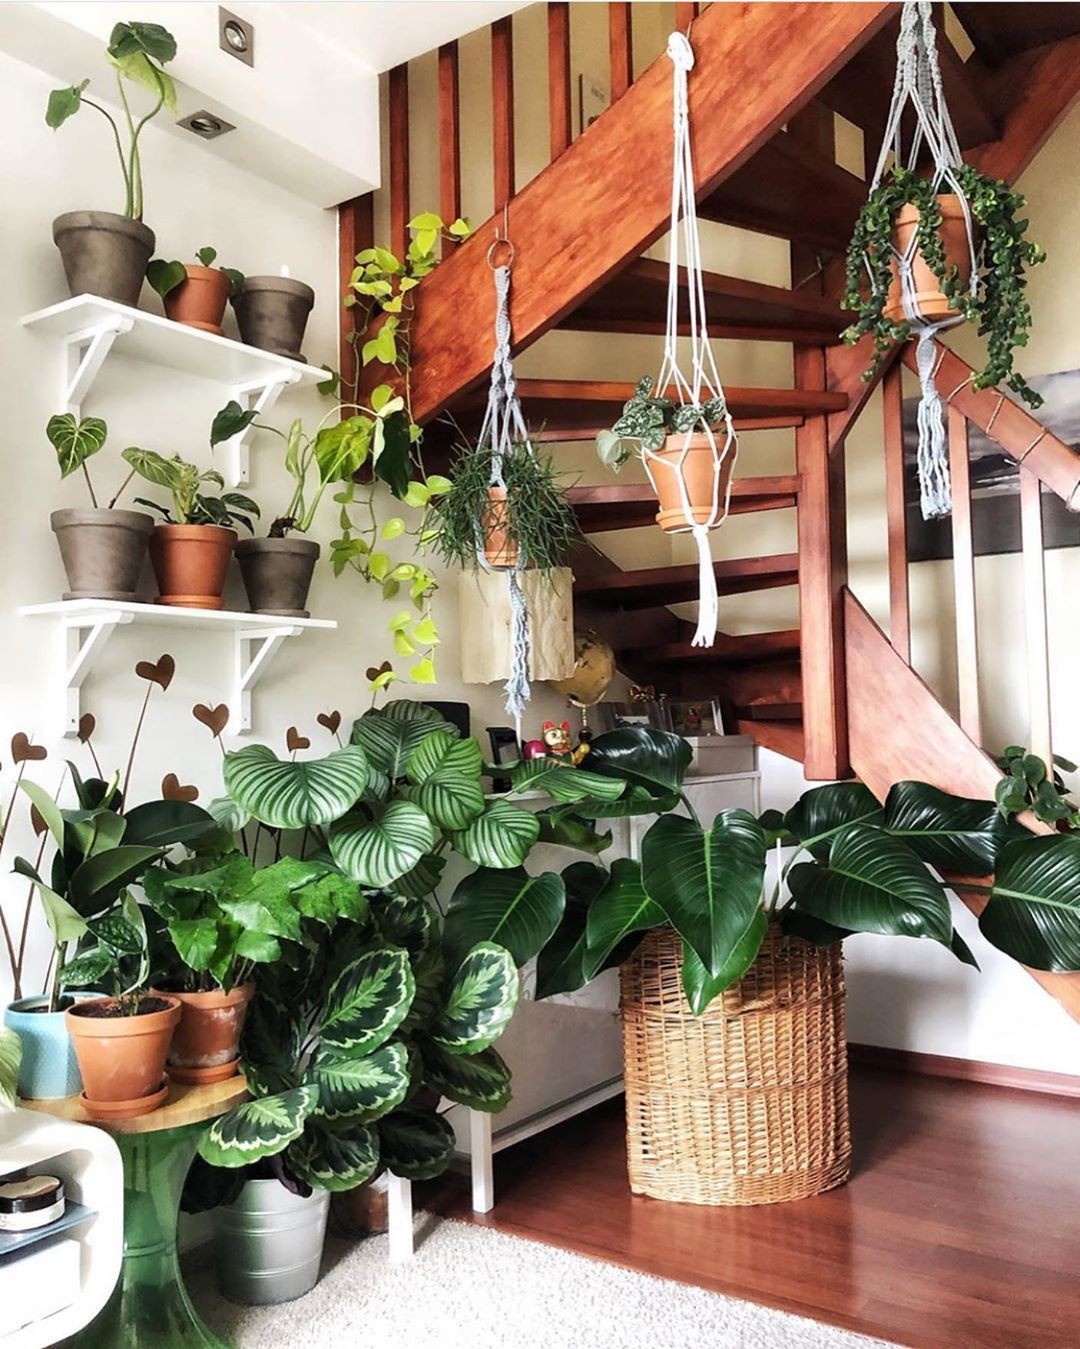 Jardim pequeno: ideias para ter plantas em casas ou apartamentos (Foto: Reprodução/Instagram/@dominika_variegata)